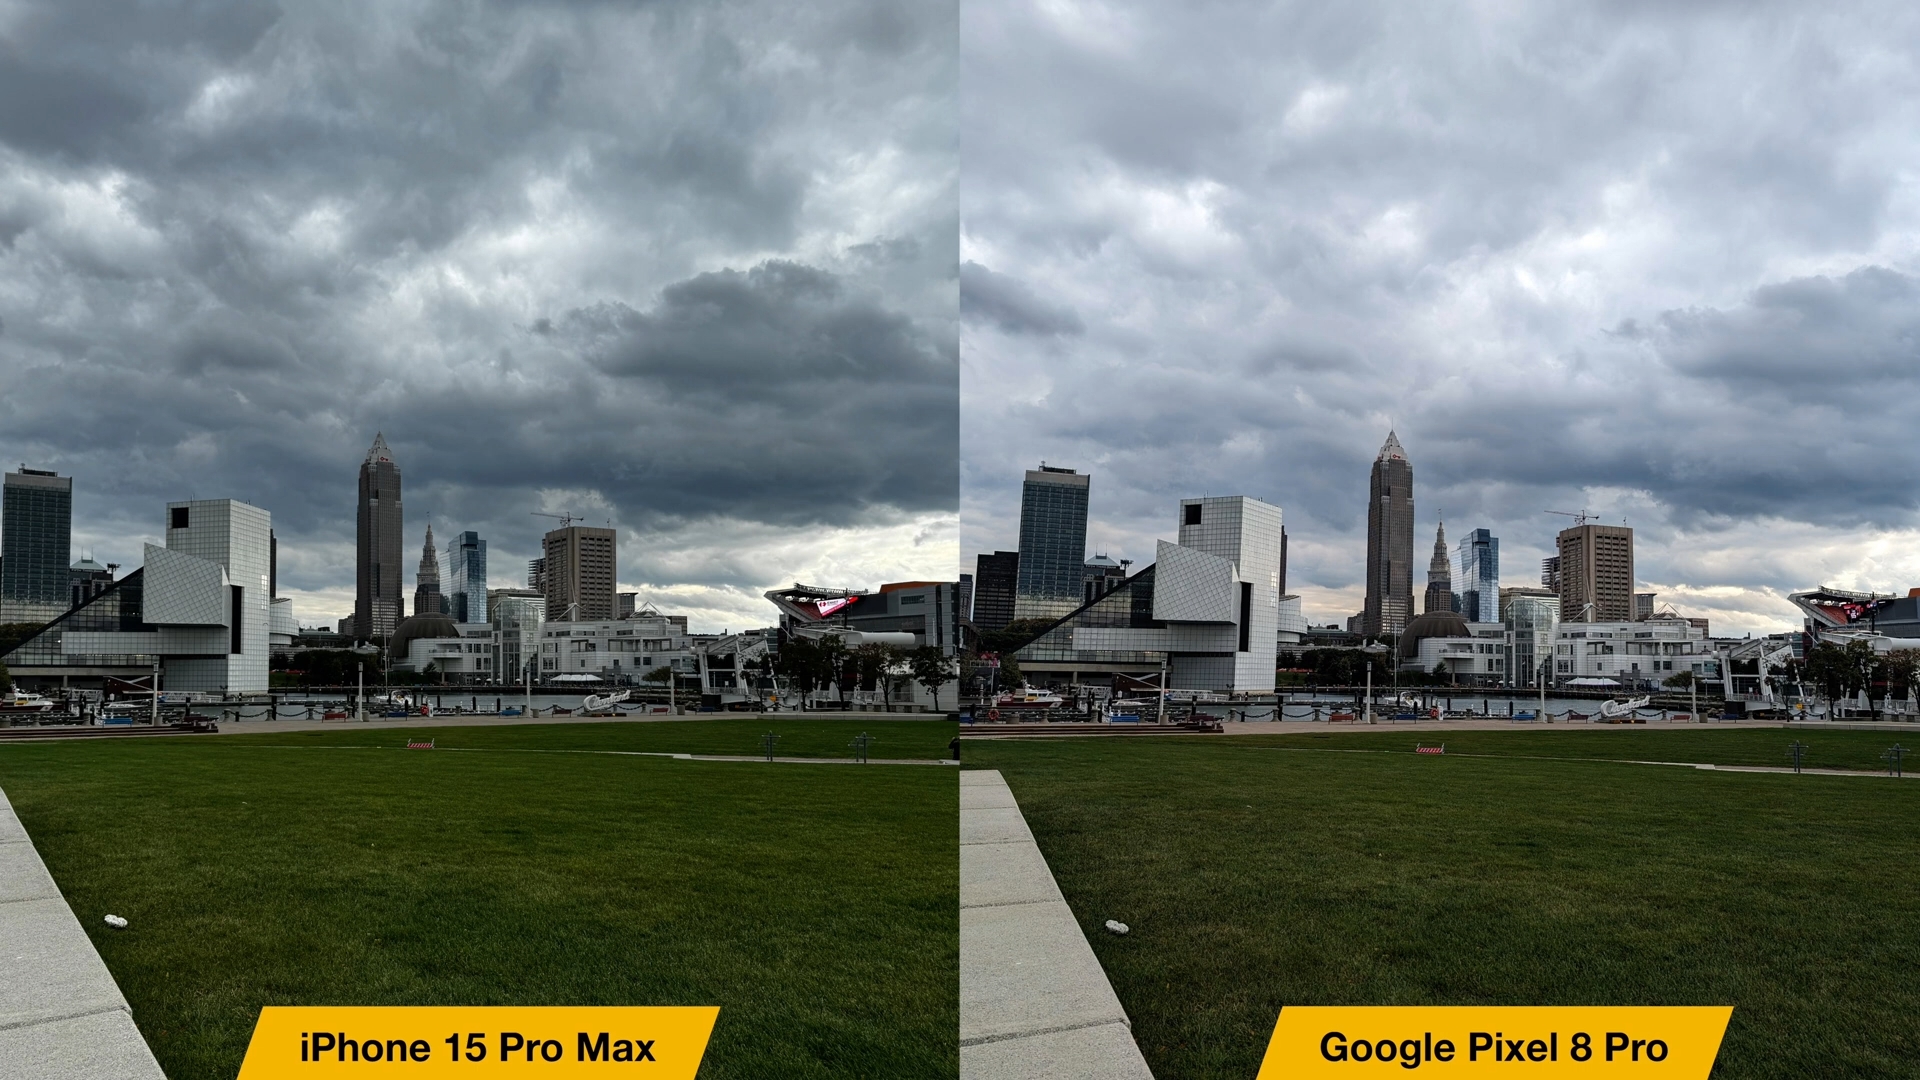 Từ iPhoneIslam.com, so sánh giữa iPhone 15 Pro Max và Google Pixel 8 Pro trong ảnh